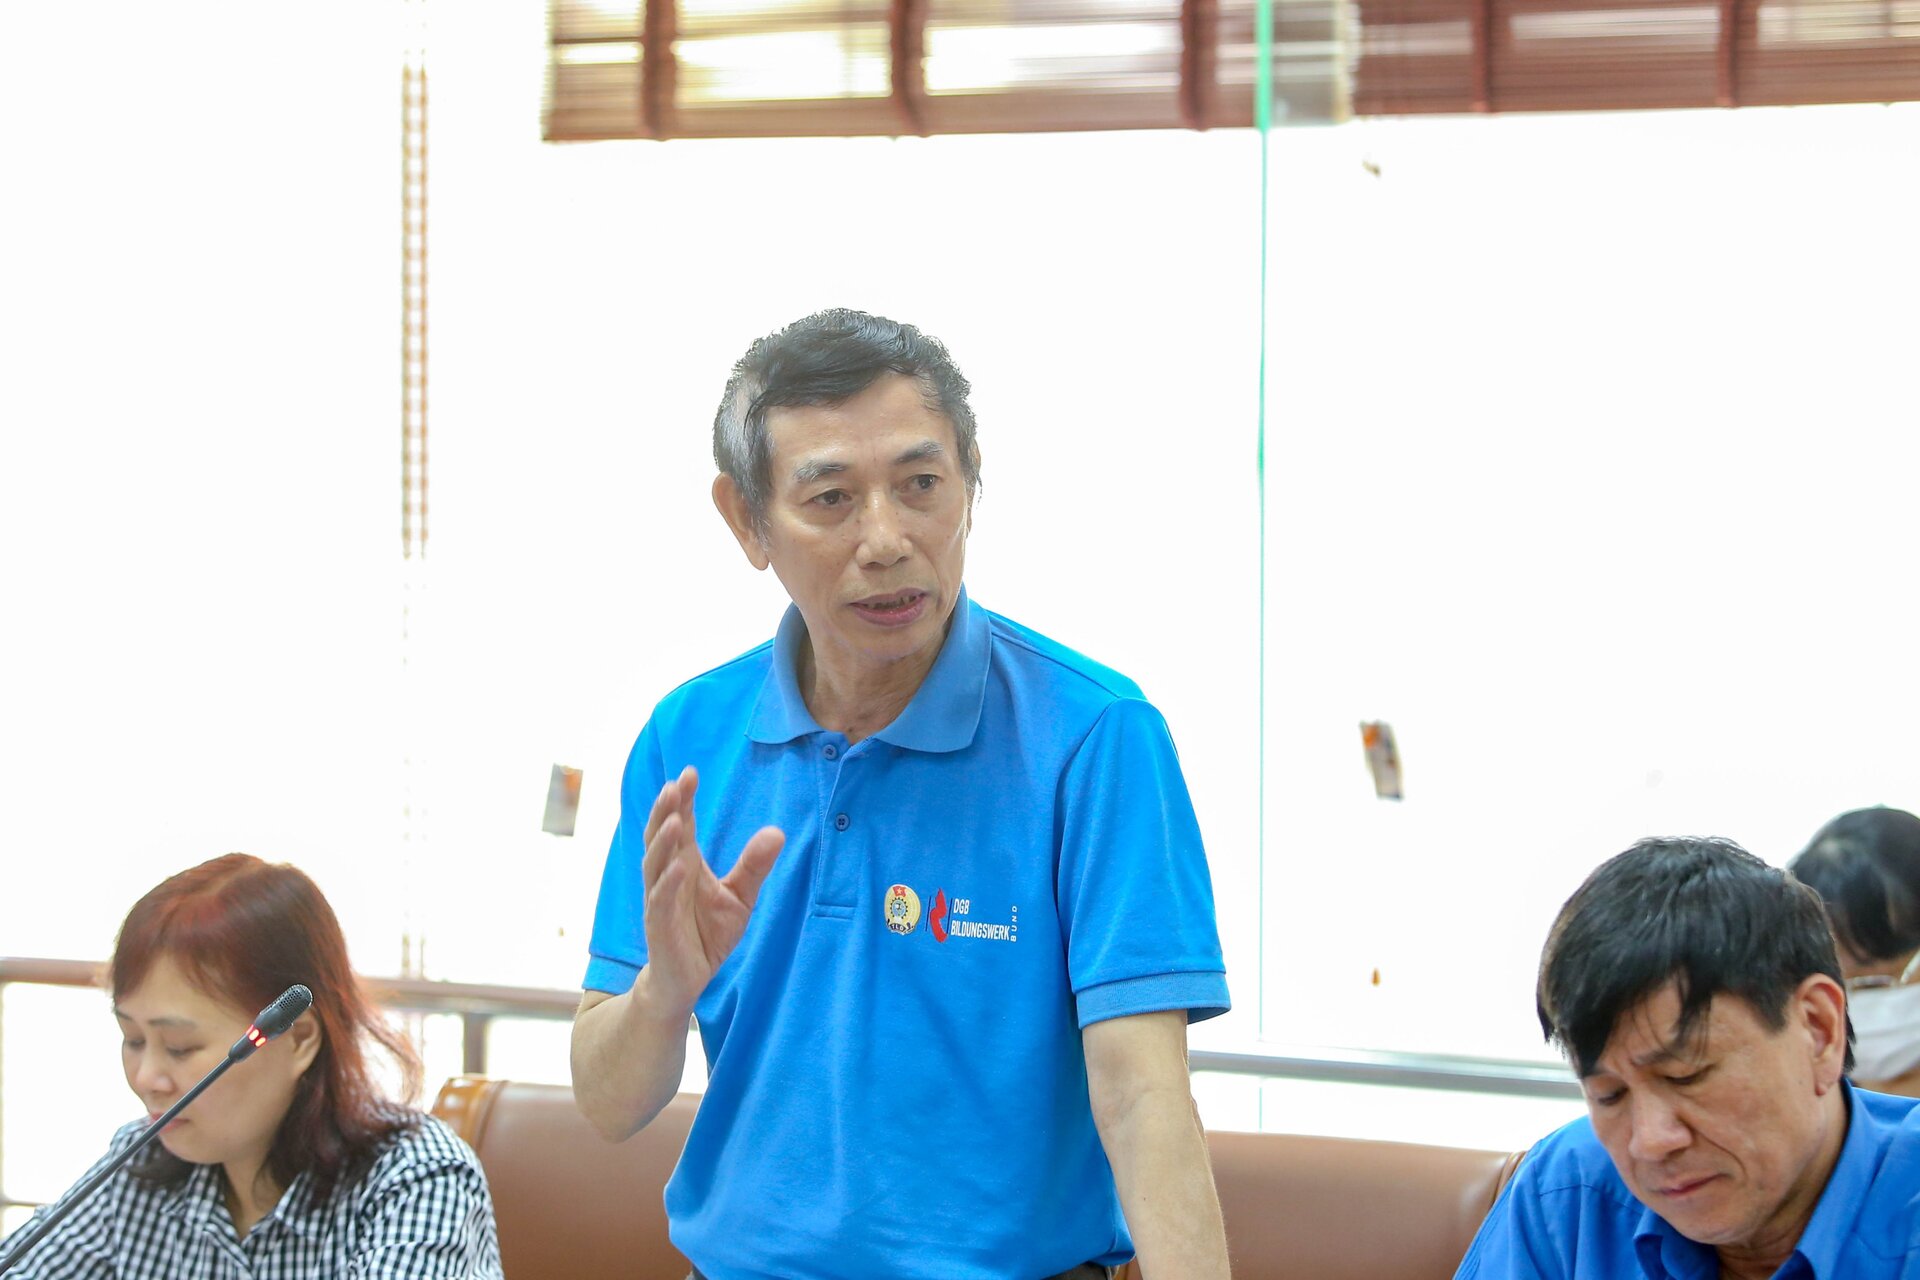 PGS. TS Vũ Quang Thọ, nguyên Viện trưởng Viện Công nhân – Công đoàn, Tổng Liên đoàn Lao động VN (laodongcongdoan.vn)